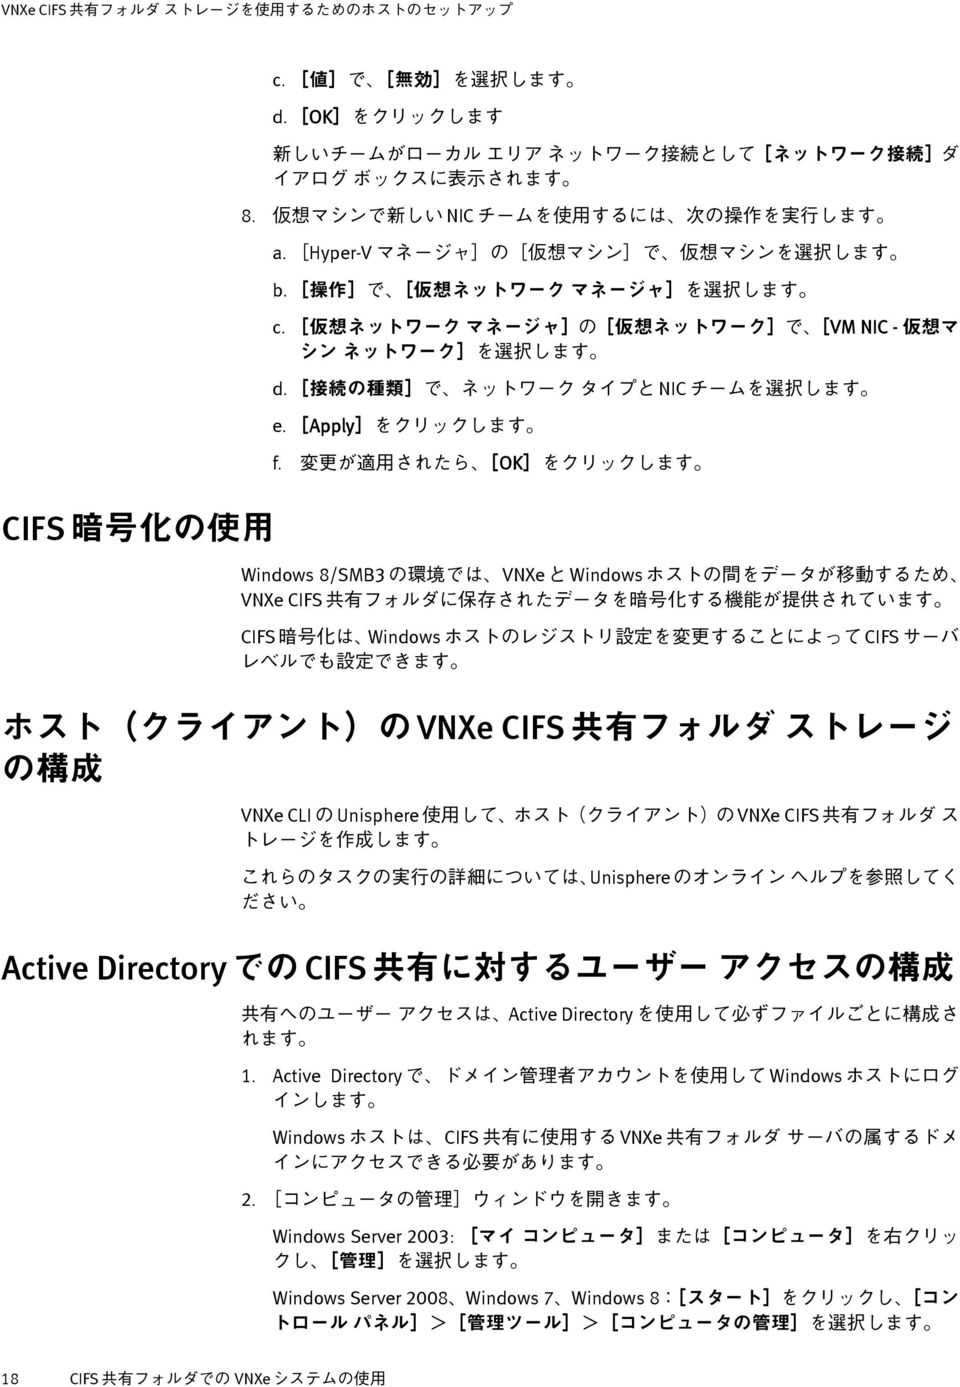 Unisphere VNXe CIFS Unisphere Active Directory CIFS Active Directory 1.